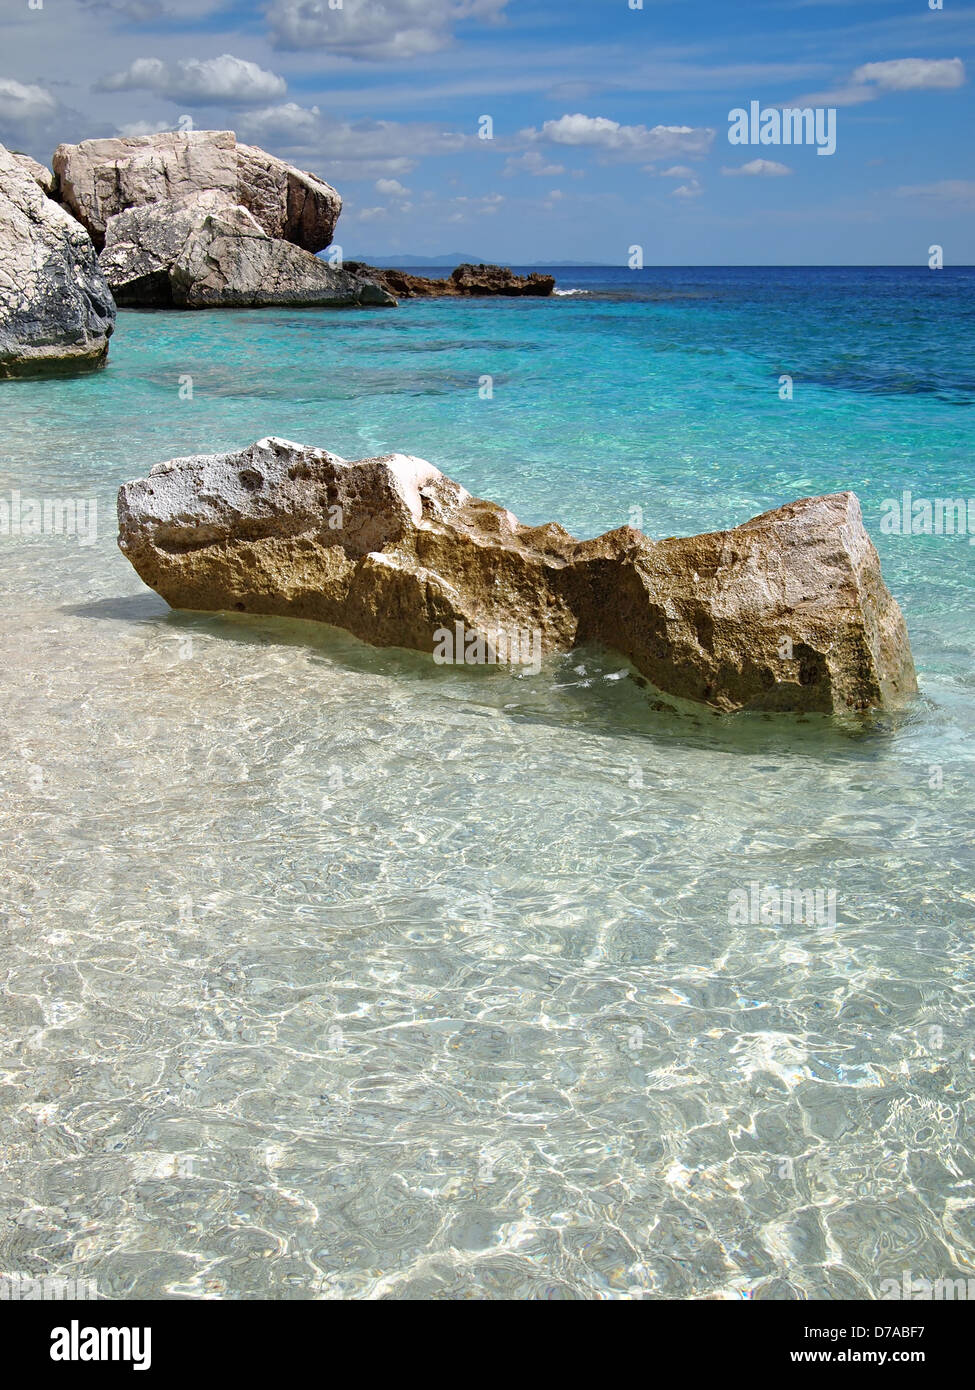 Großen Felsen in der flachen smaragdgrünen See an einem Strand an der Costa Smeralda in Sardinien, Italien. Stockfoto